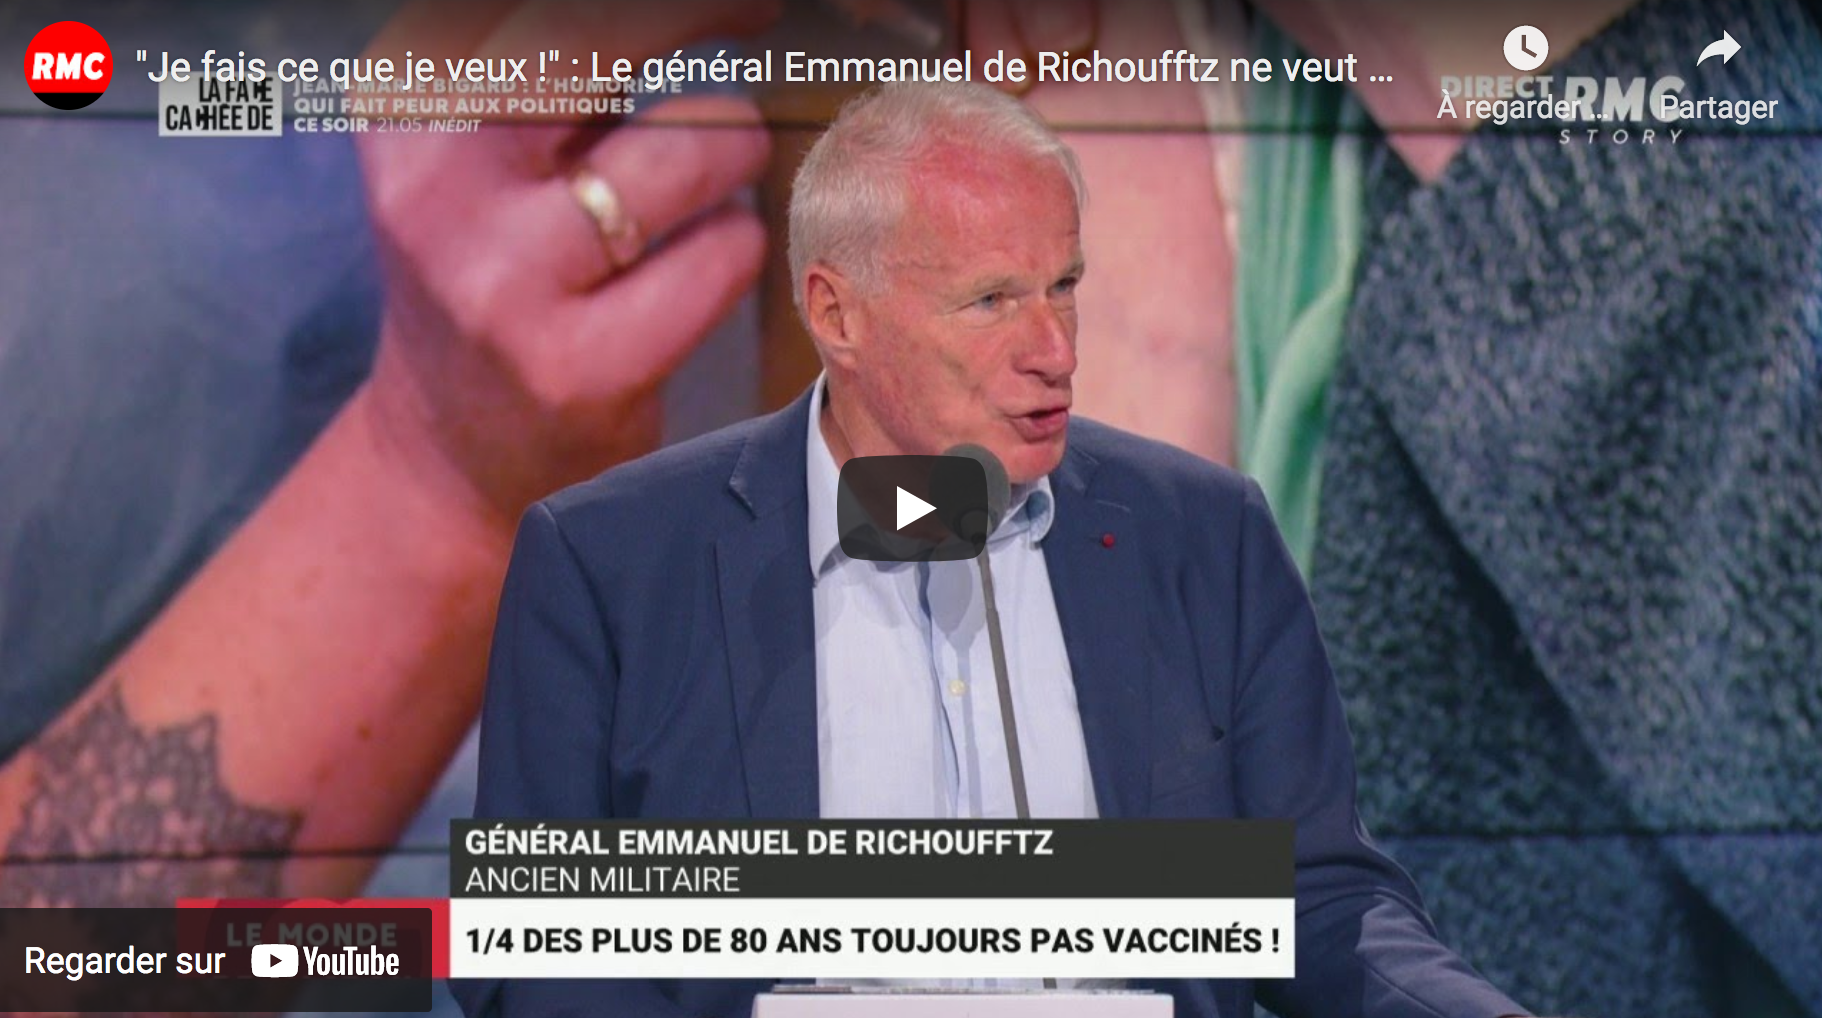 “Je fais ce que je veux !” : Le général Emmanuel de Richoufftz ne veut pas se faire vacciner (VIDÉO)